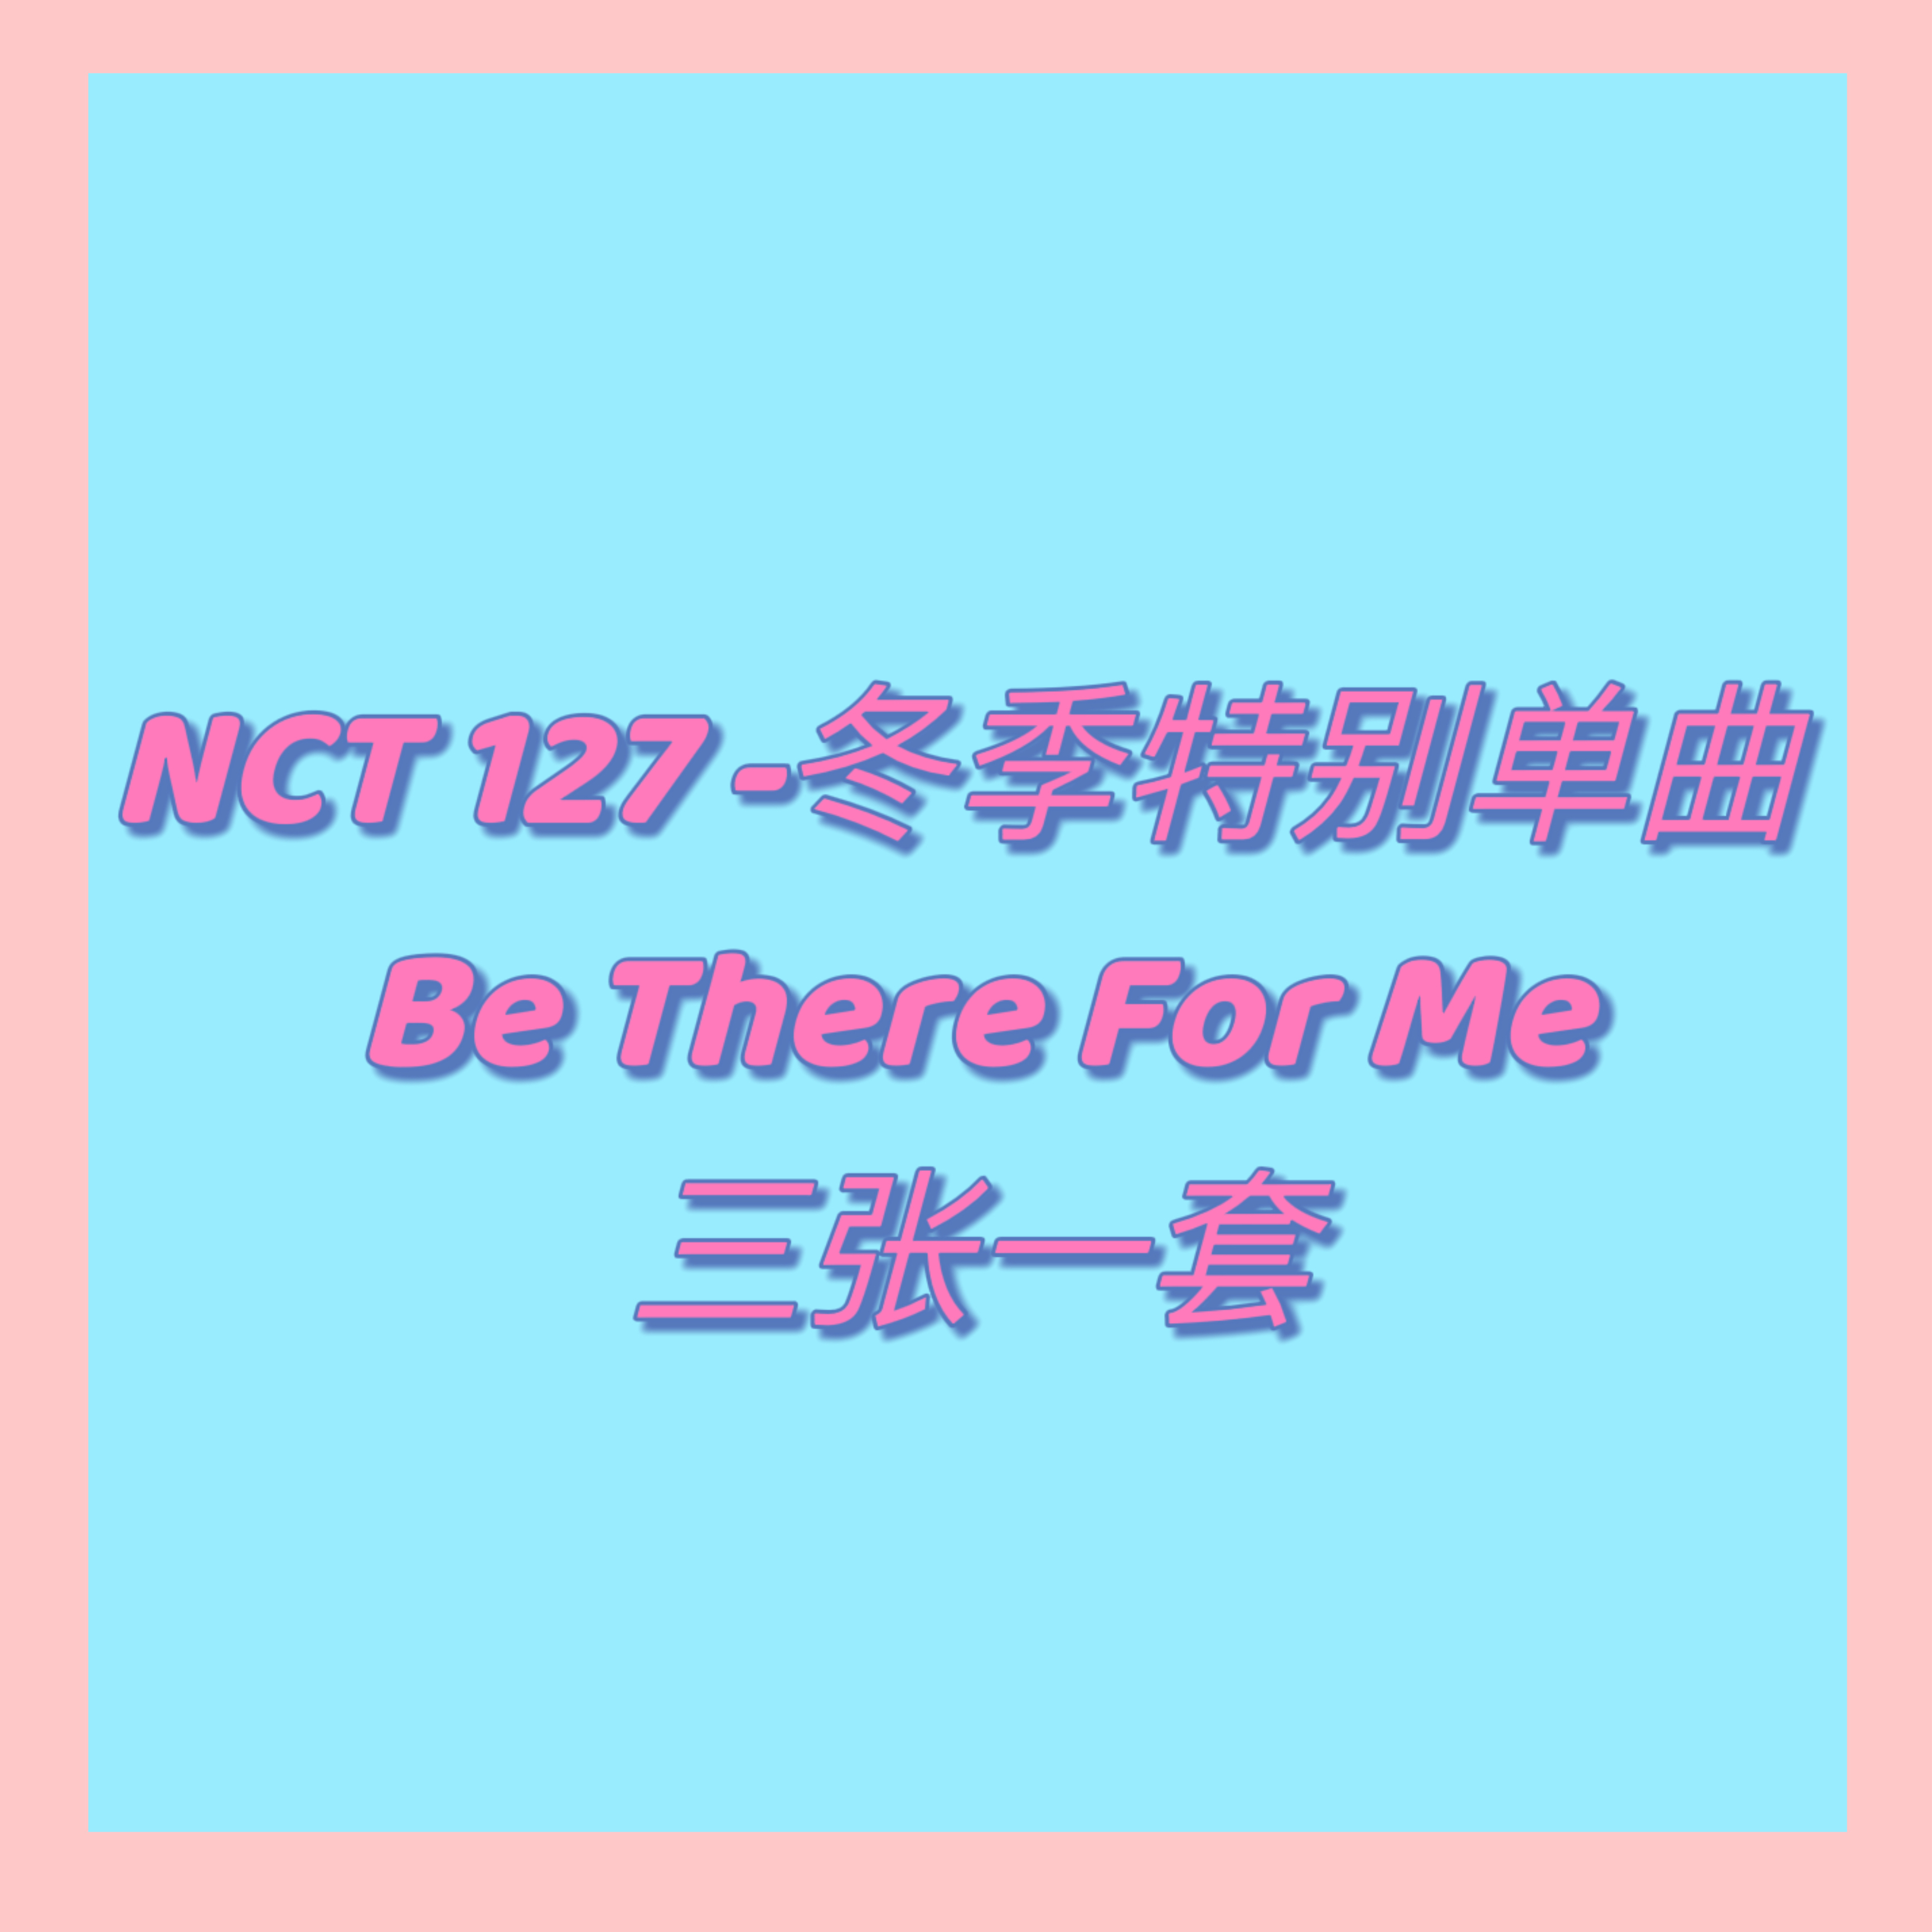 [全款 裸专][3CD SET] [Ktown4u Special Gift] NCT 127 - Winter Special Single Album [Be There For Me] (127 STEREO Ver.(Random Ver.)+SMini Ver.+SMini Ver.(Random Ver.))_金廷祐吧JungWooBar 